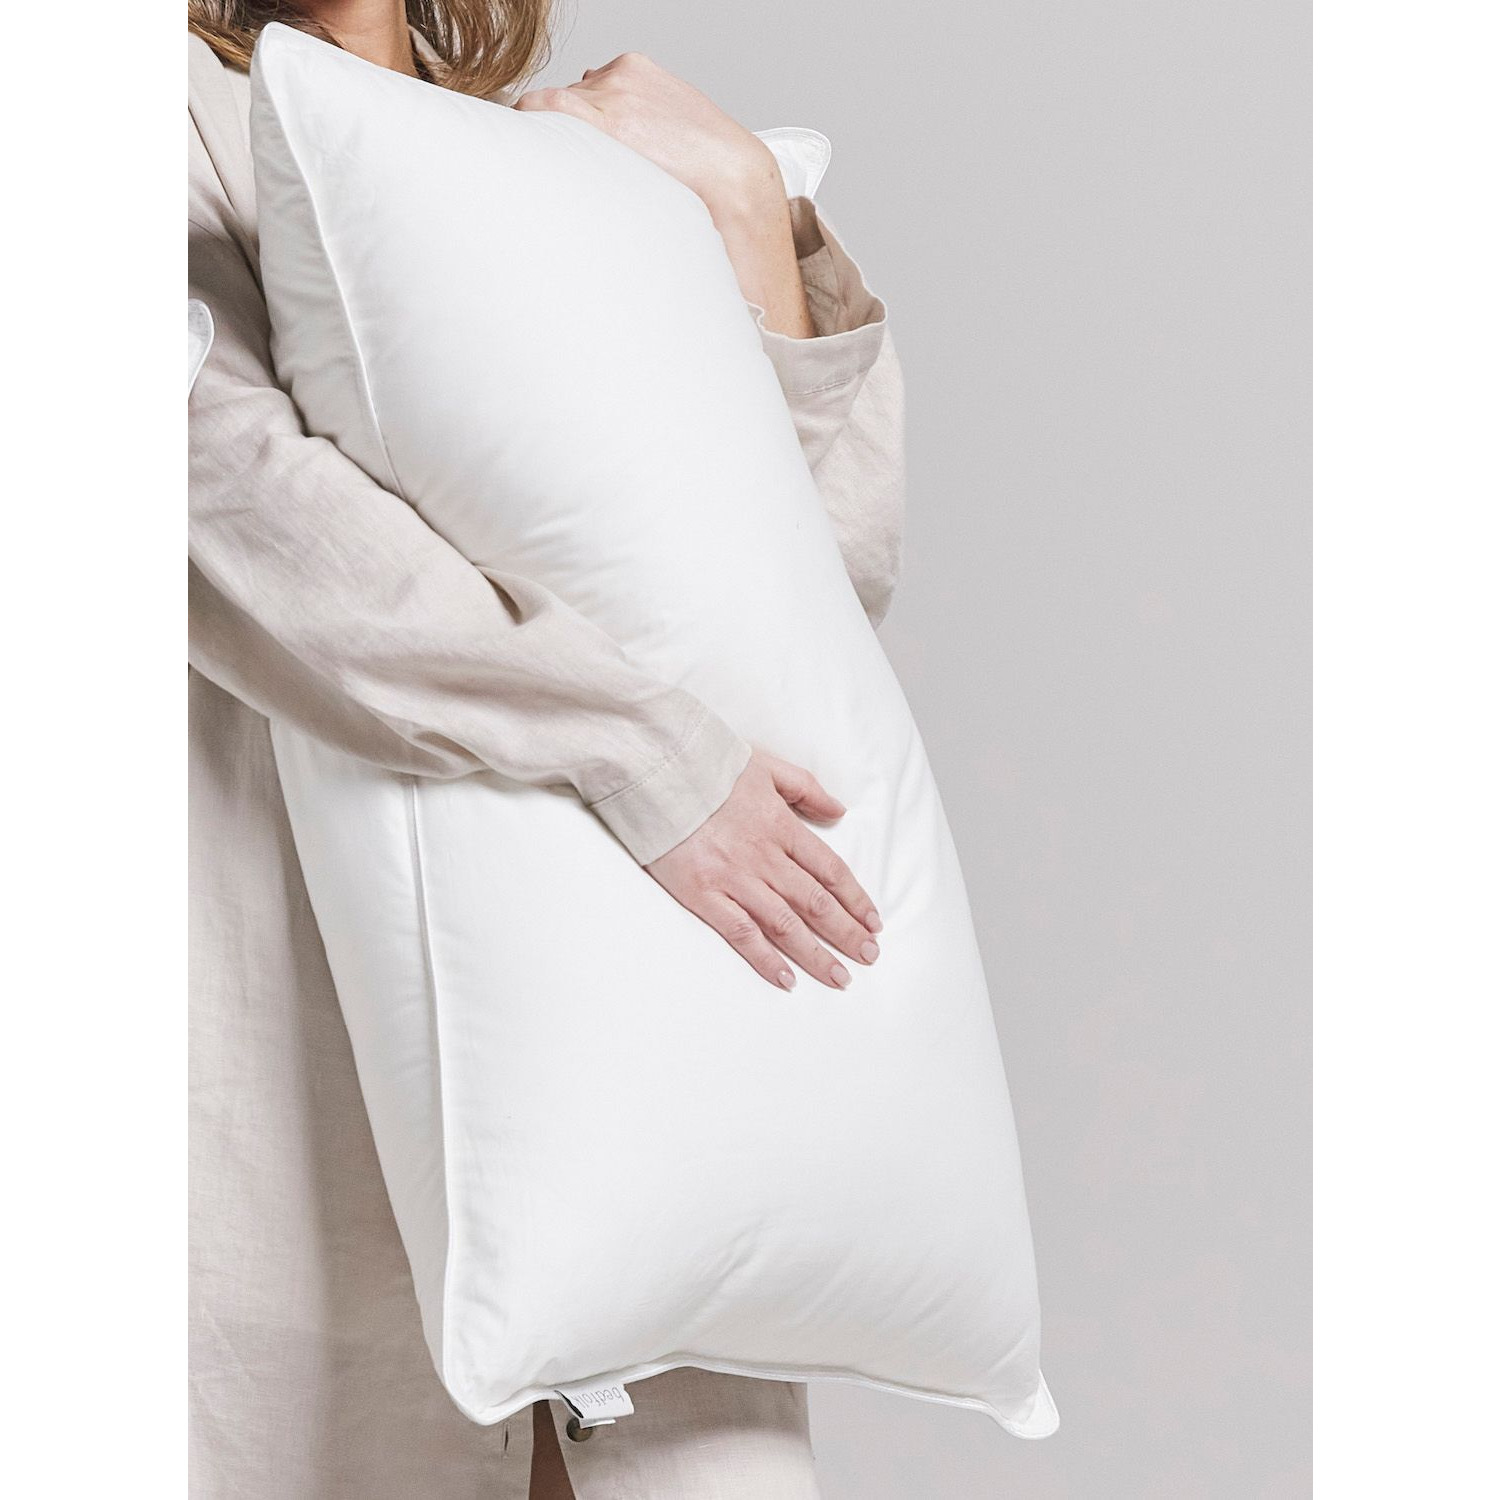 Bedfolk Duck Down Kingsize Pillow, Medium/Firm - image 1